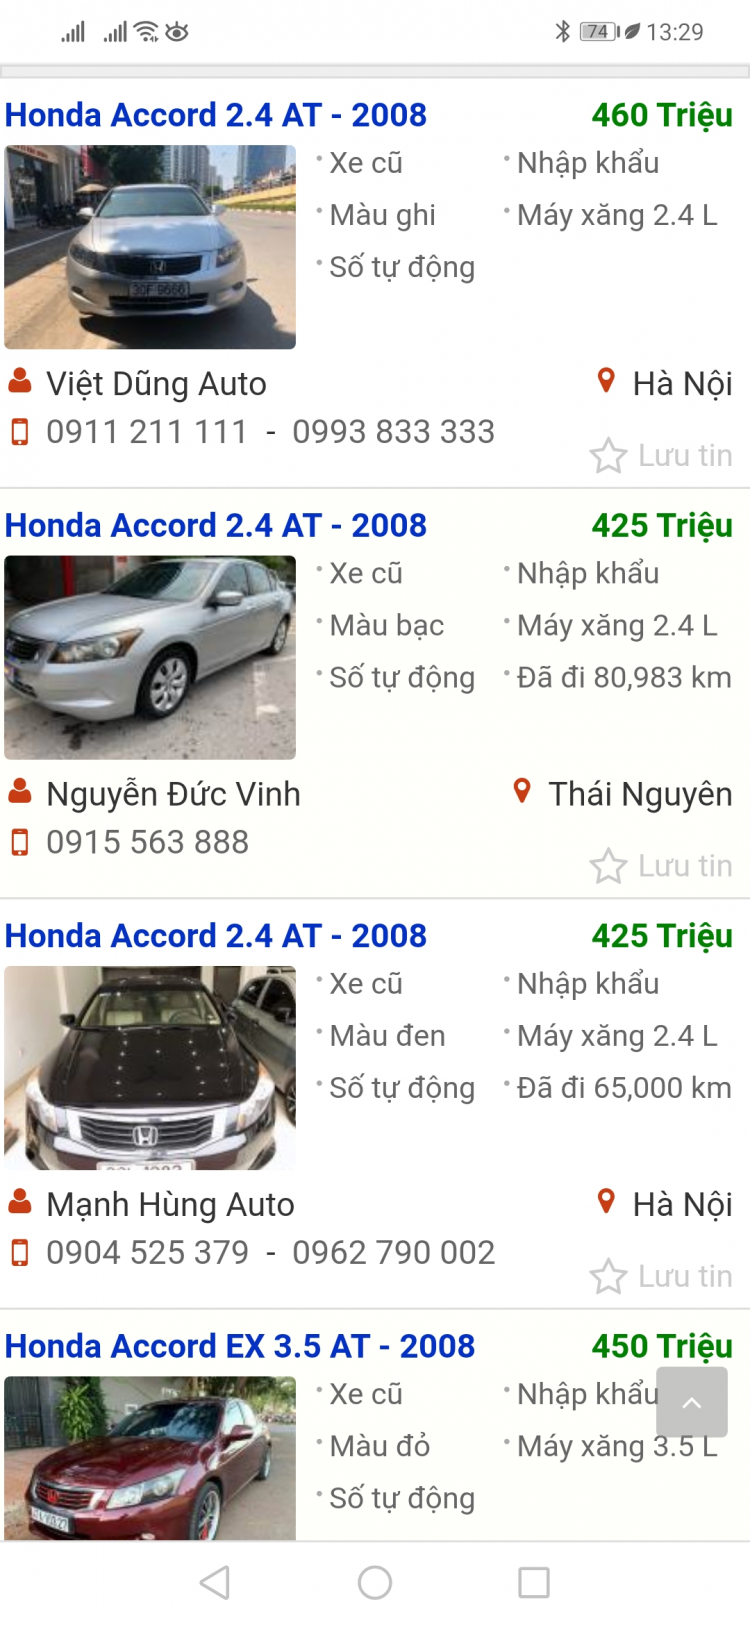 Xe Honda cũ dưới 500tr, chọn Accord hay CR-V các bác ?